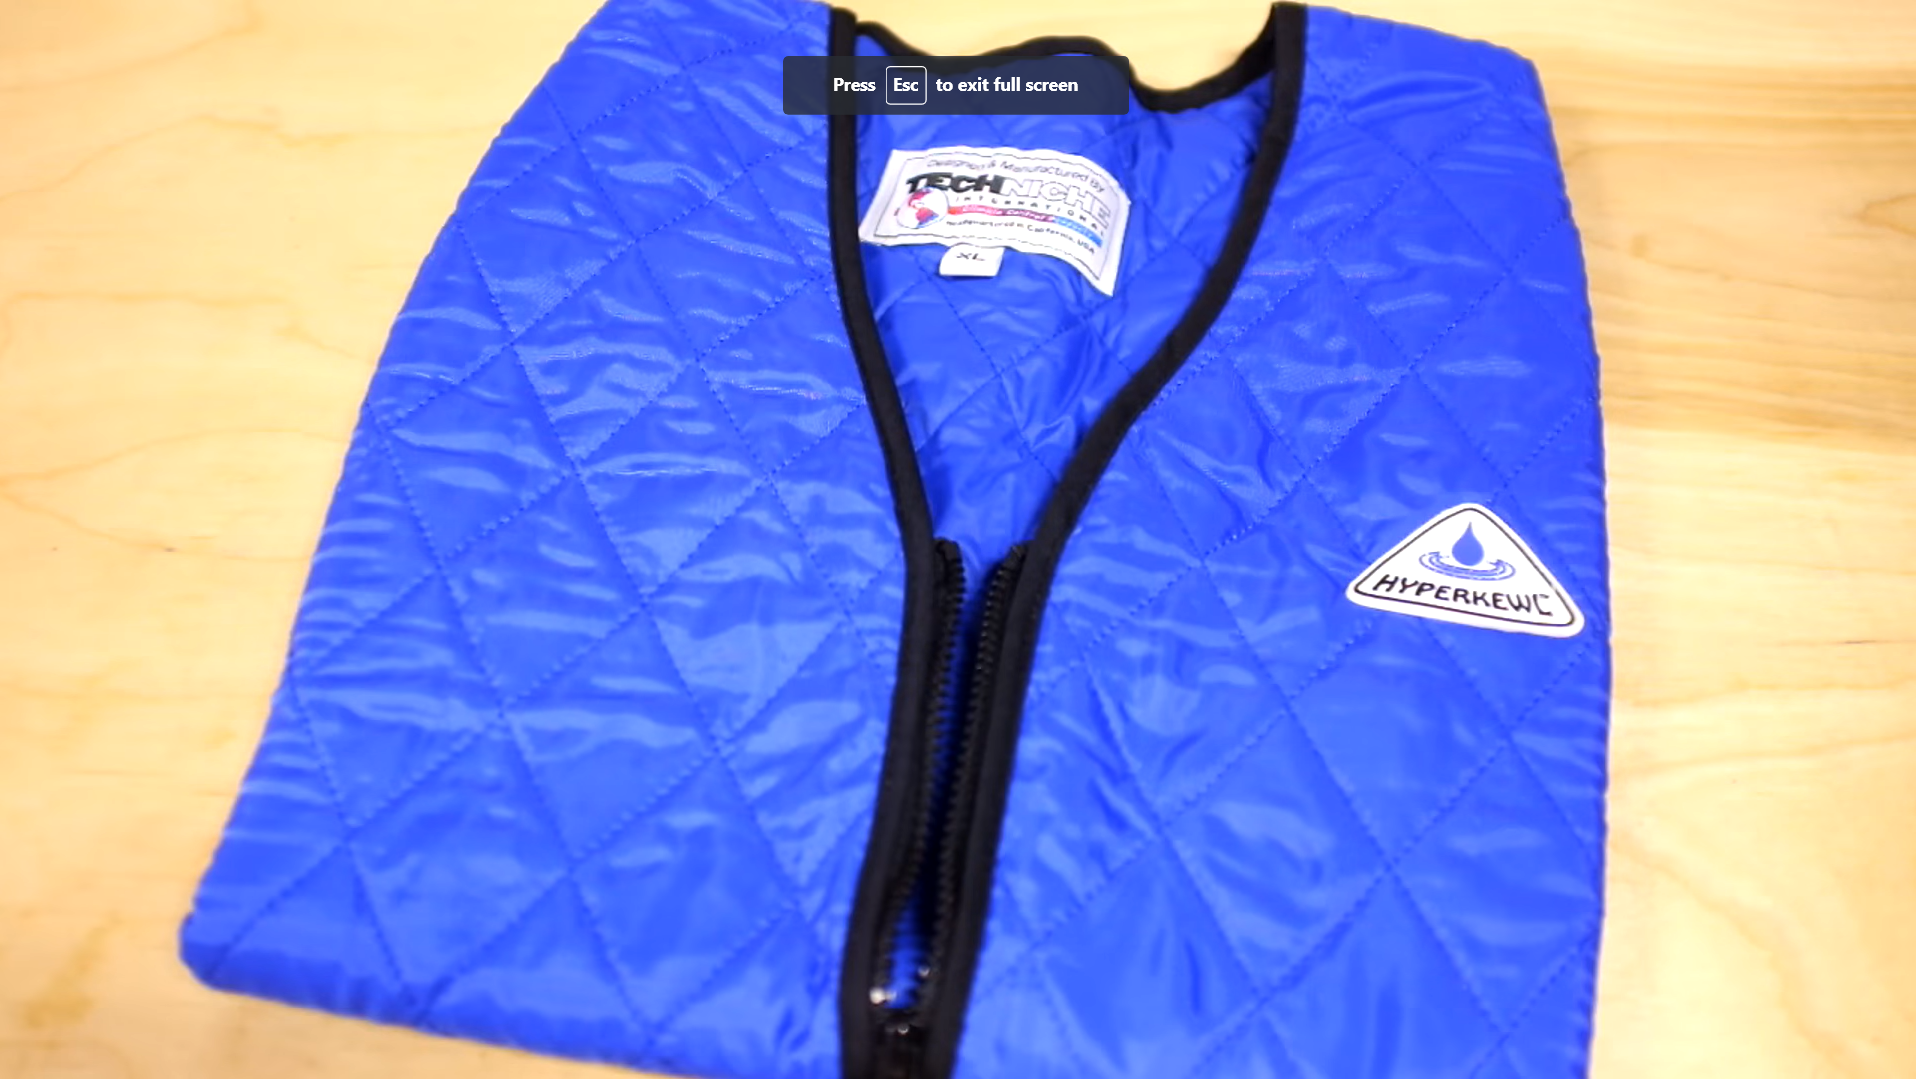 Evaporative cooling vest